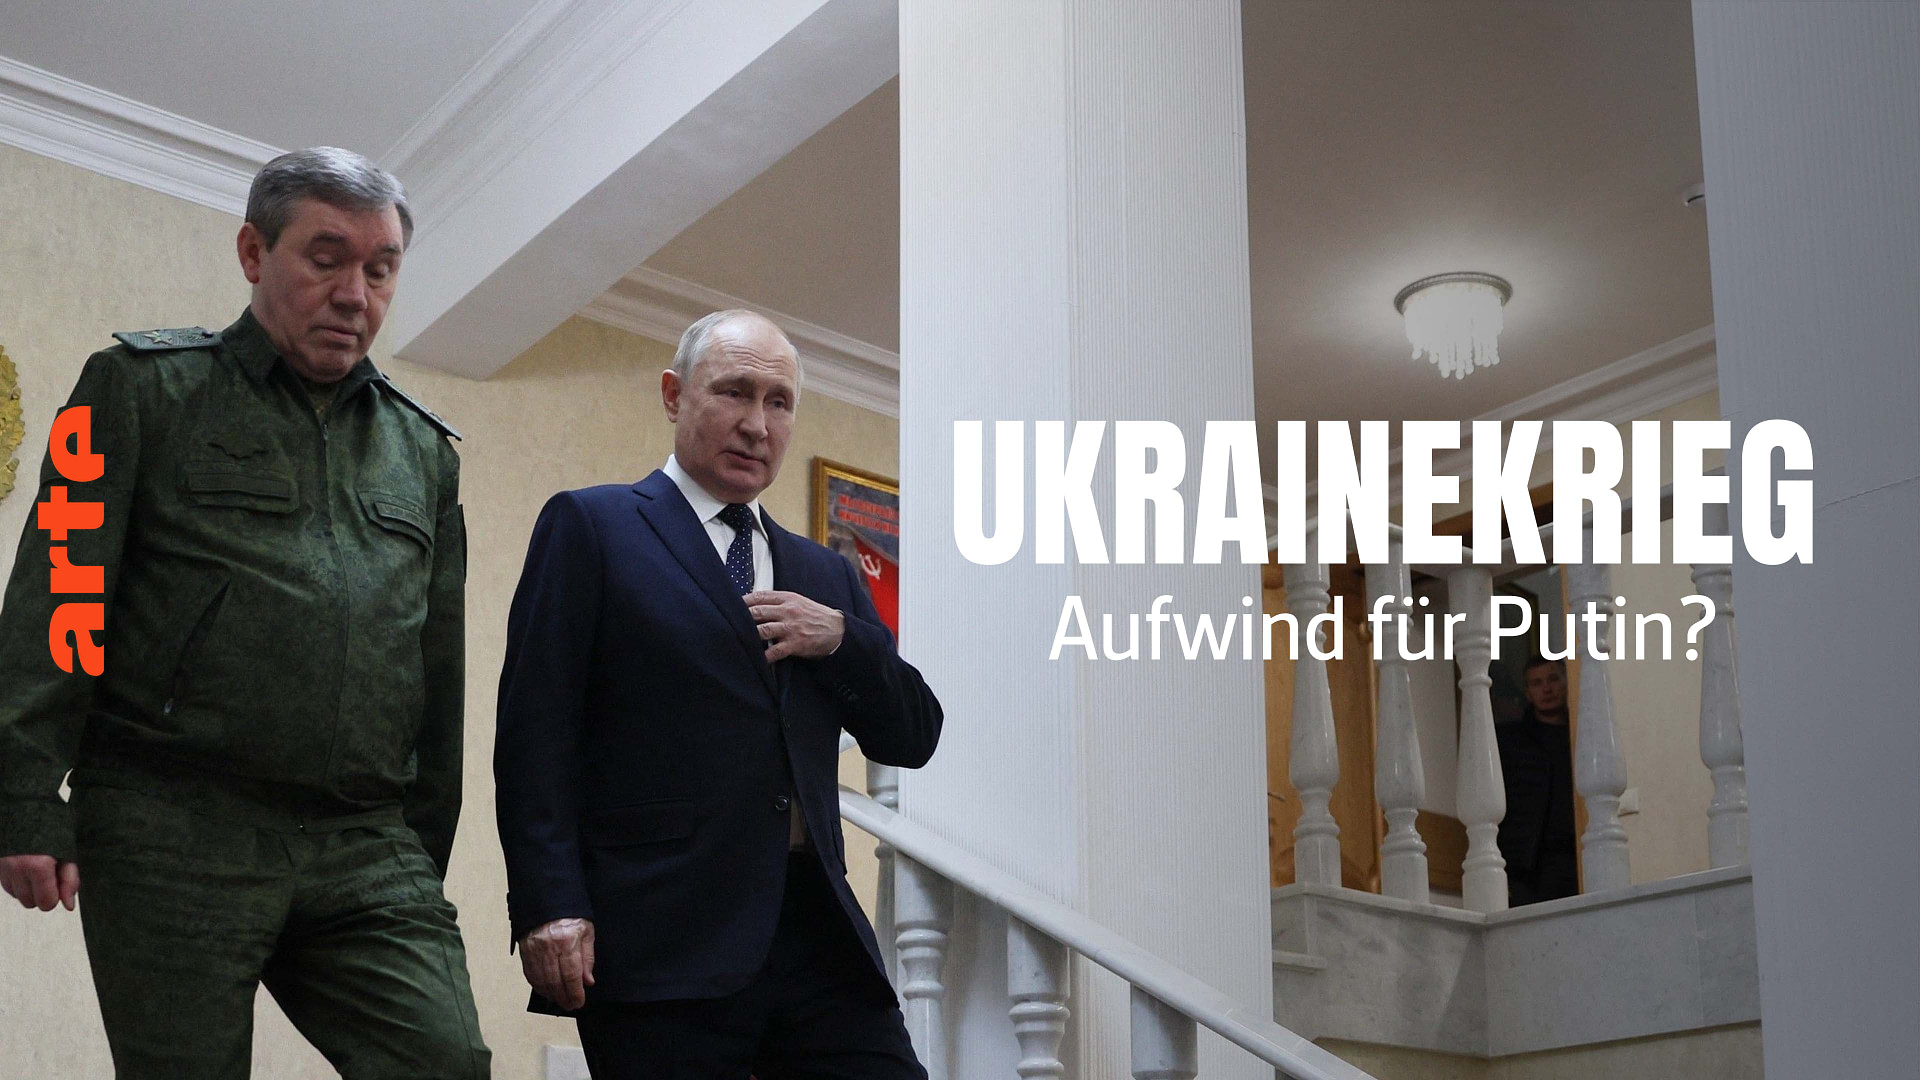 Ukrainekrieg: Aufwind für Putin?